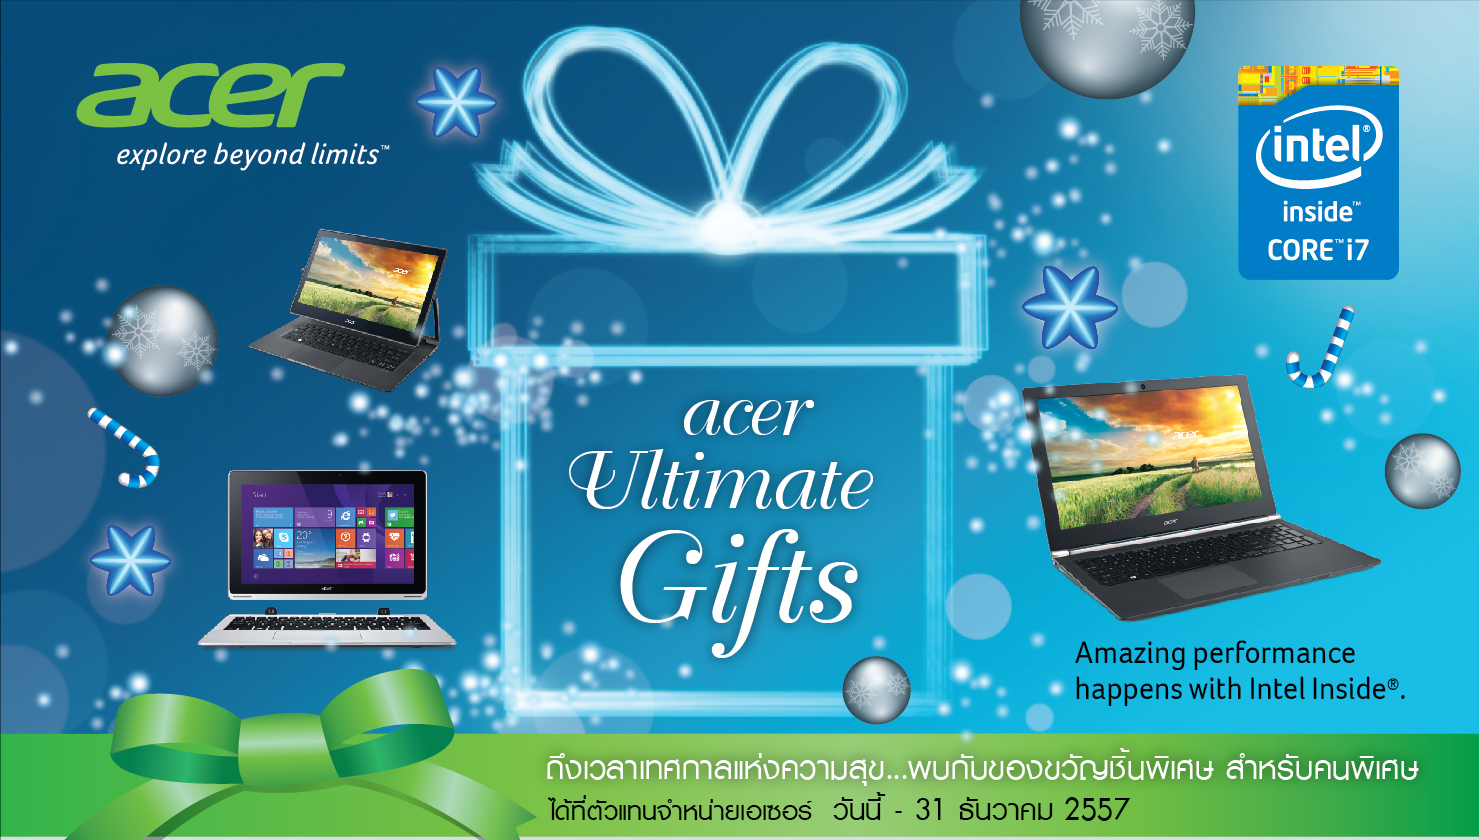 [PR] Acer Ultimate Gifts โปรโมชันพิเศษต้อนรับช่วงเทศกาลแห่งความสุข